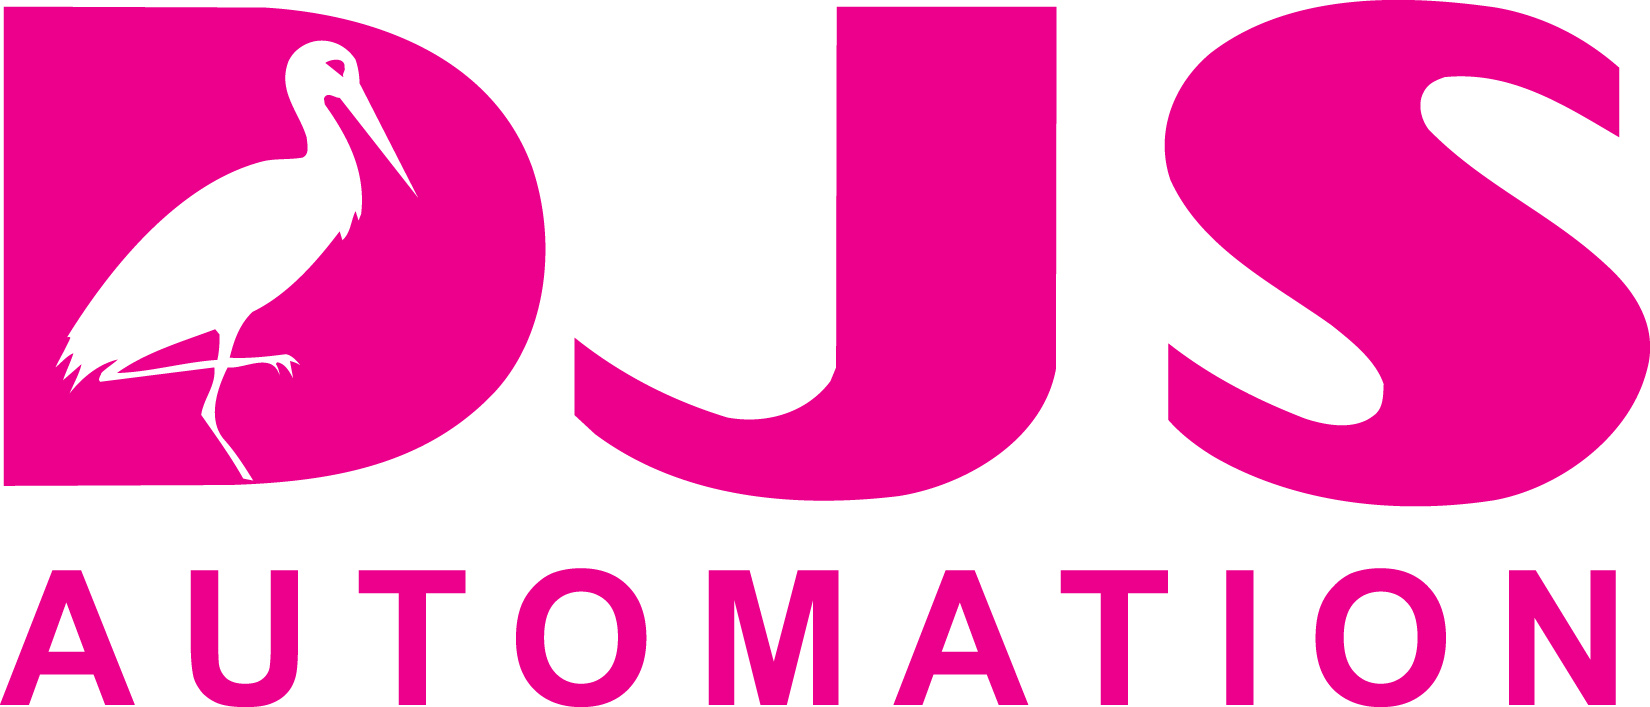 DJS Automation Oy